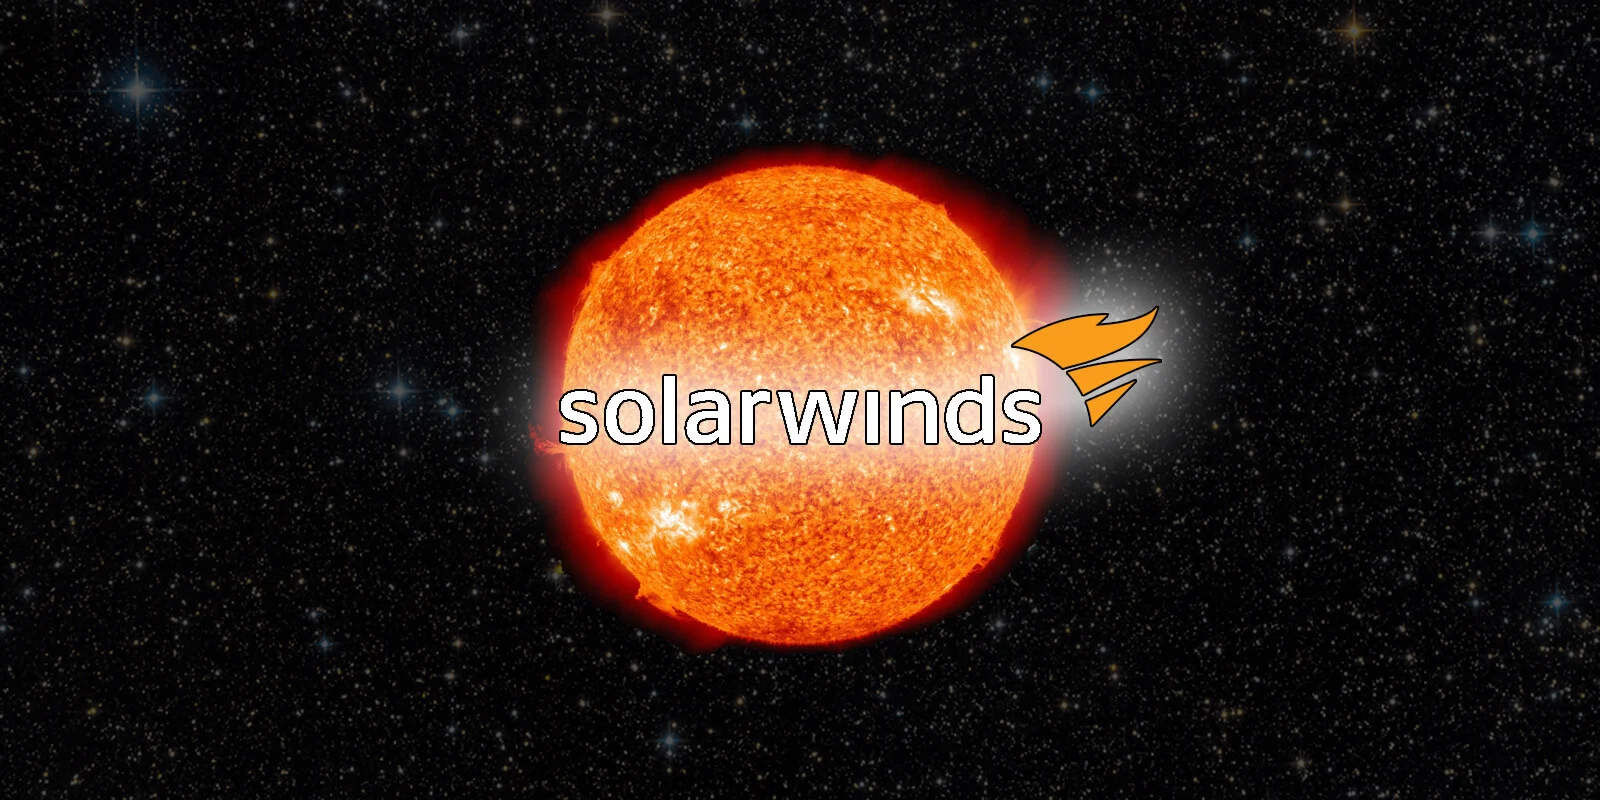 solarwinds image